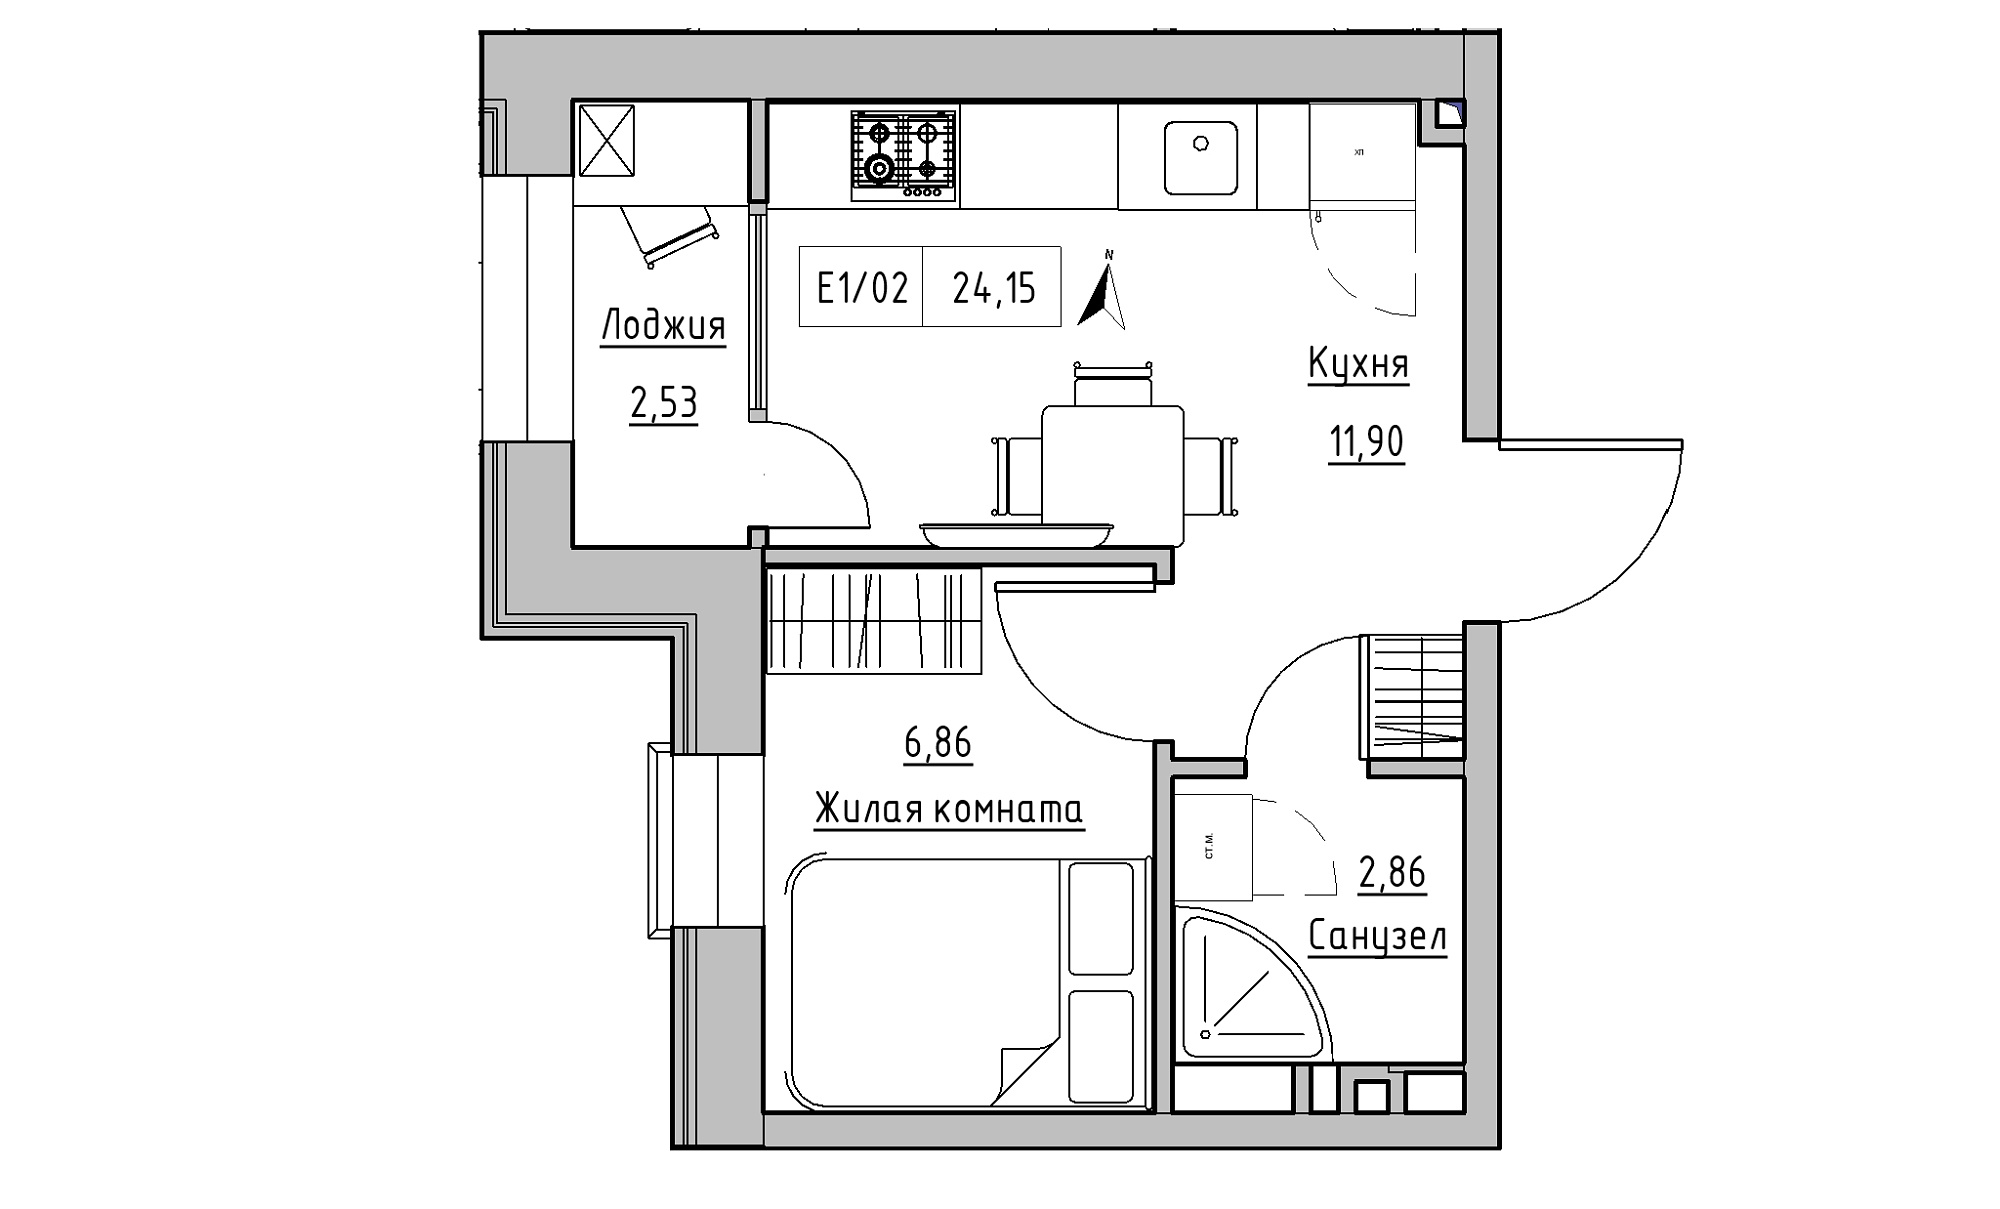 Планування 1-к квартира площею 24.15м2, KS-015-03/0001.